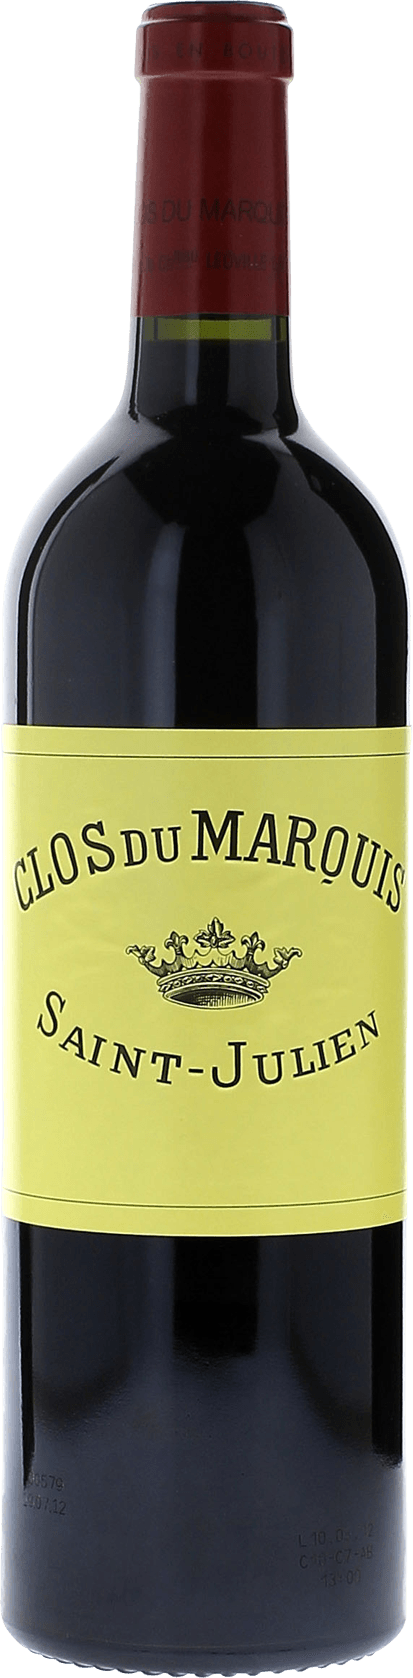 Clos du marquis 2005 2me vin de LEOVILLE LAS CASES Saint-Julien, Bordeaux rouge